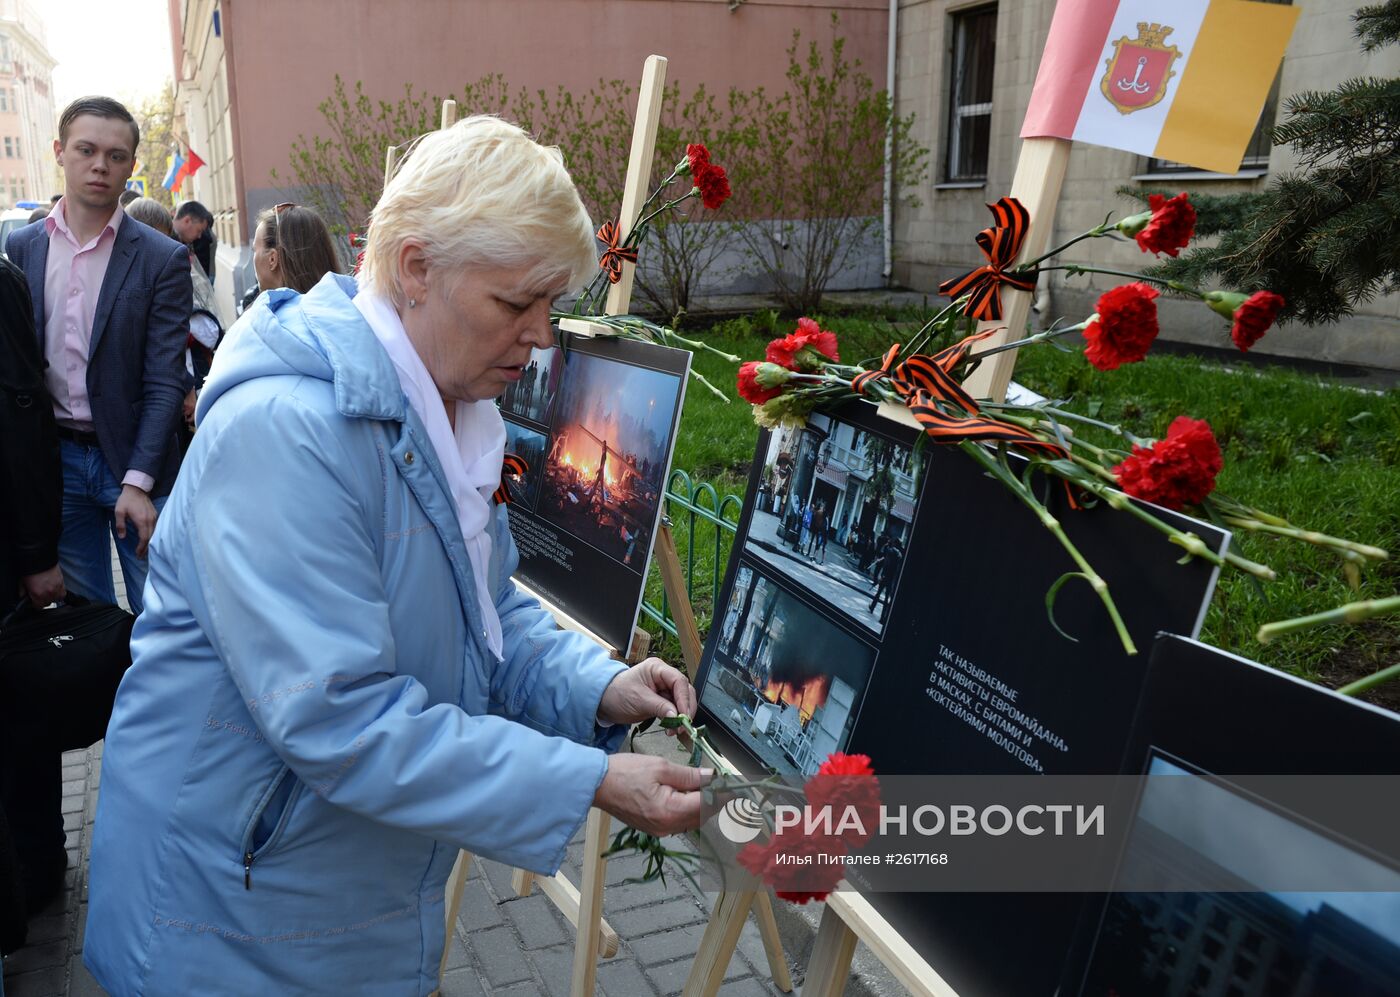 Акция памяти по погибшим в Одессе 2 мая 2014 года в Москве